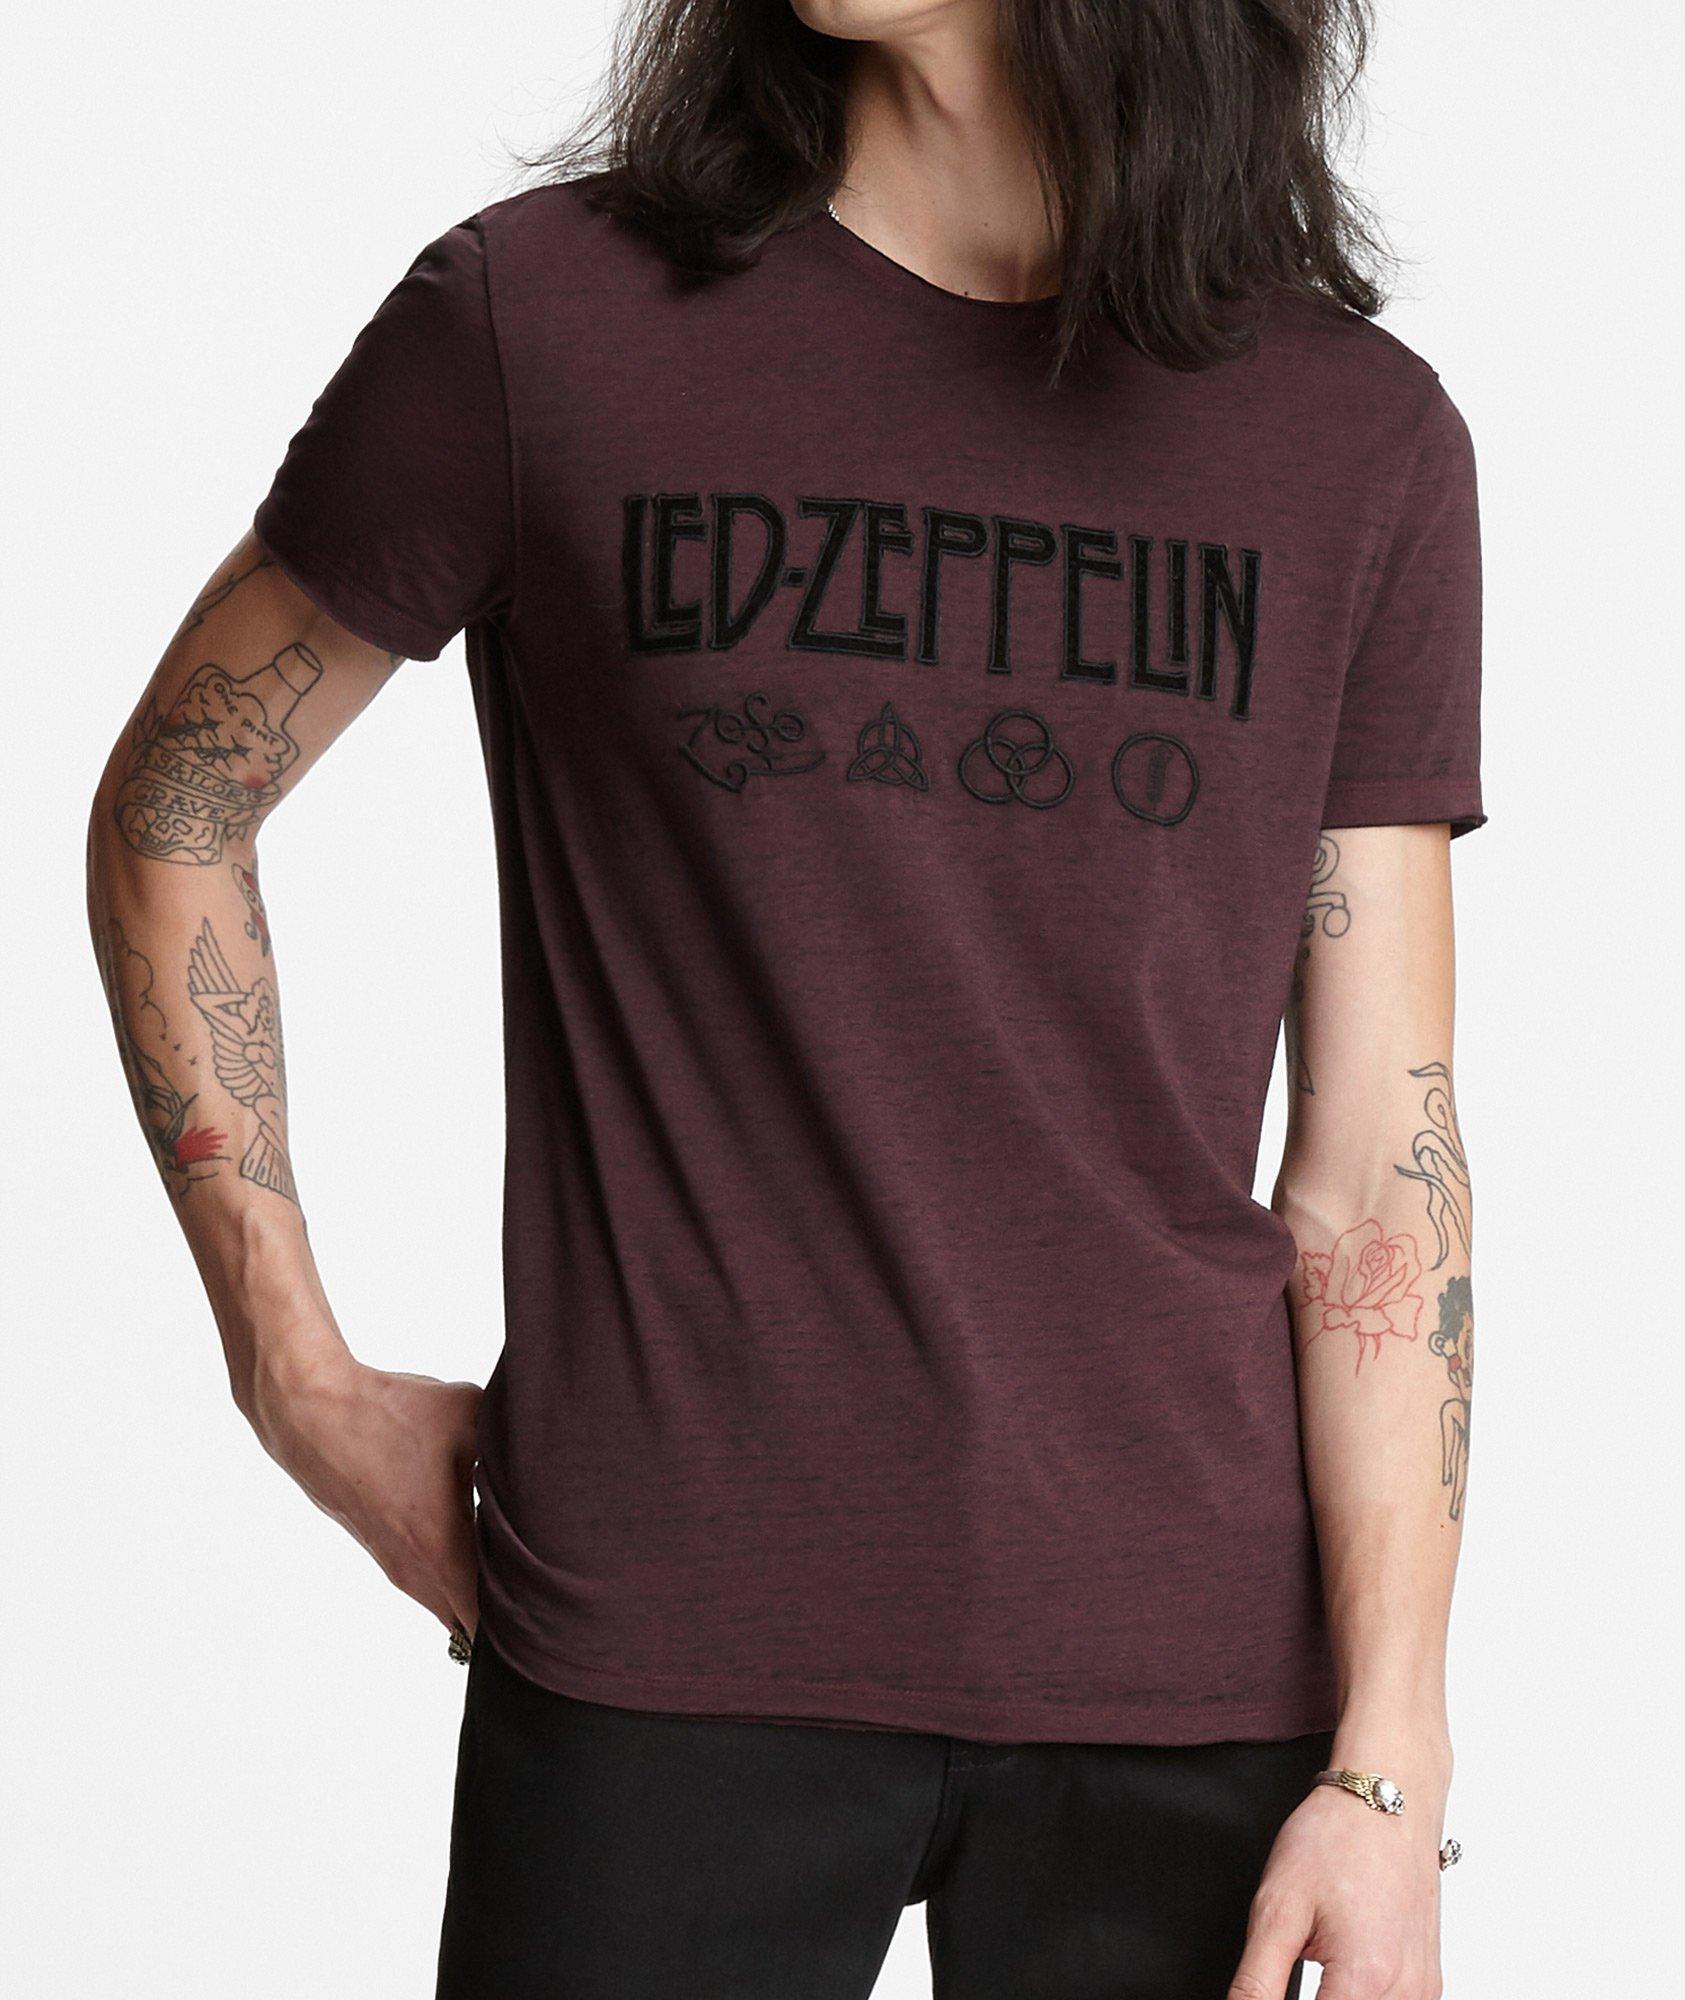 Led Zeppelin Symbols T-Shirt image 0